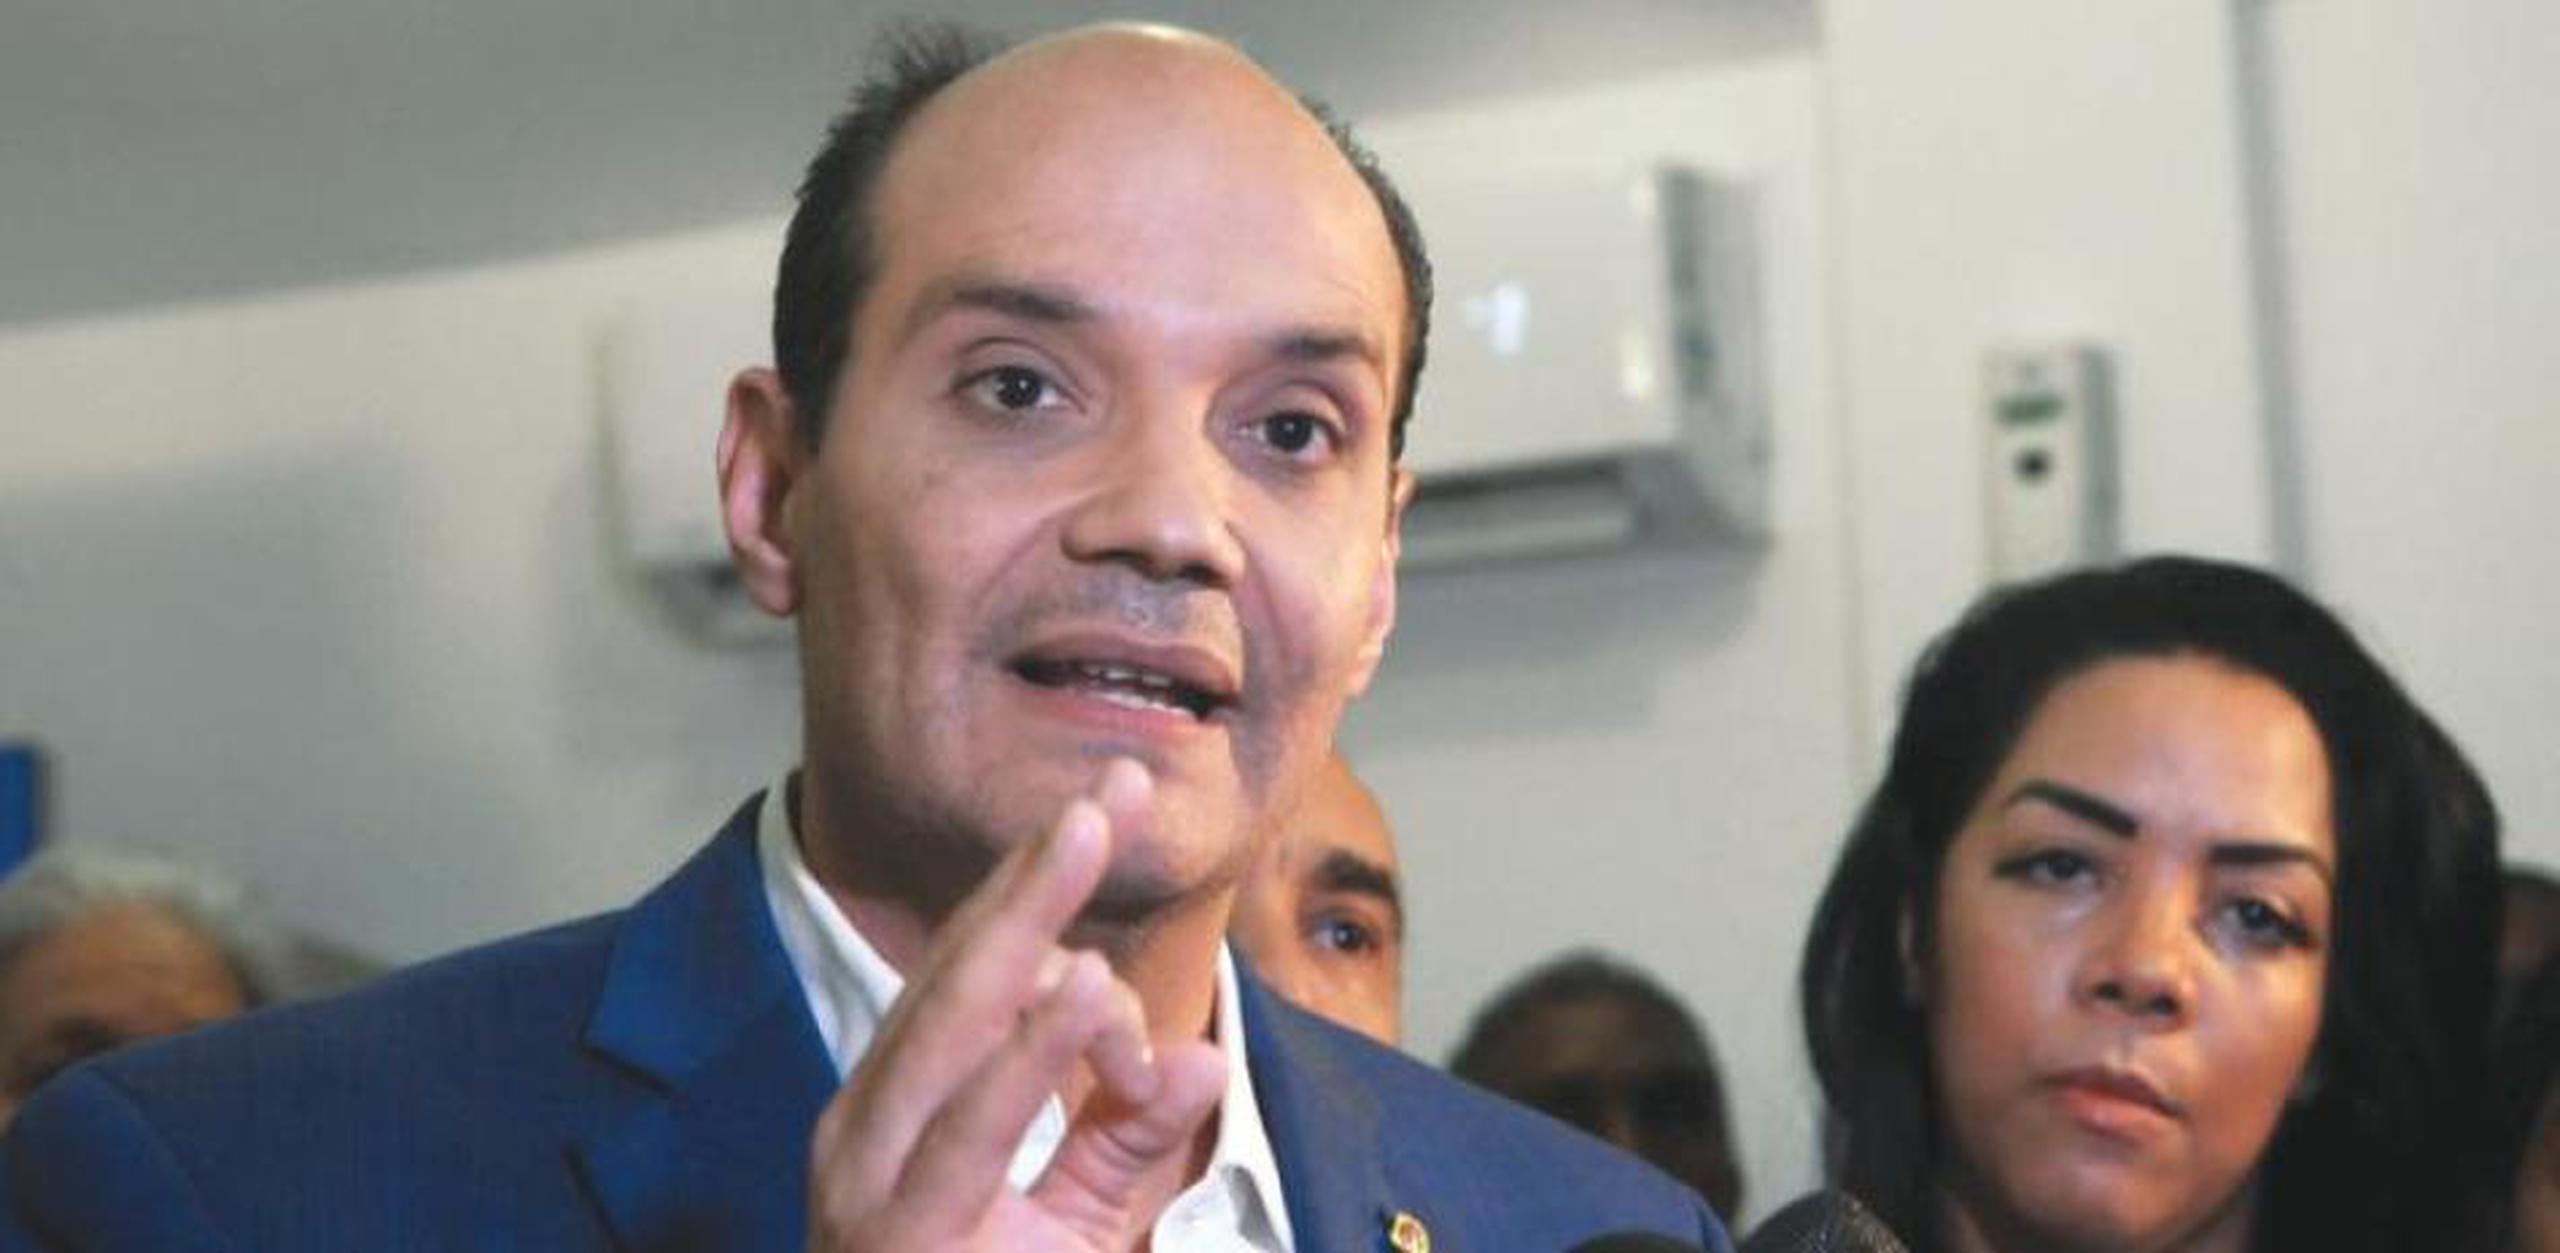 La Junta Central Electoral de la República Dominicana rechazó la candidatura de Domínguez Trujillo por no haber renunciando a la ciudadanía estadounidense.